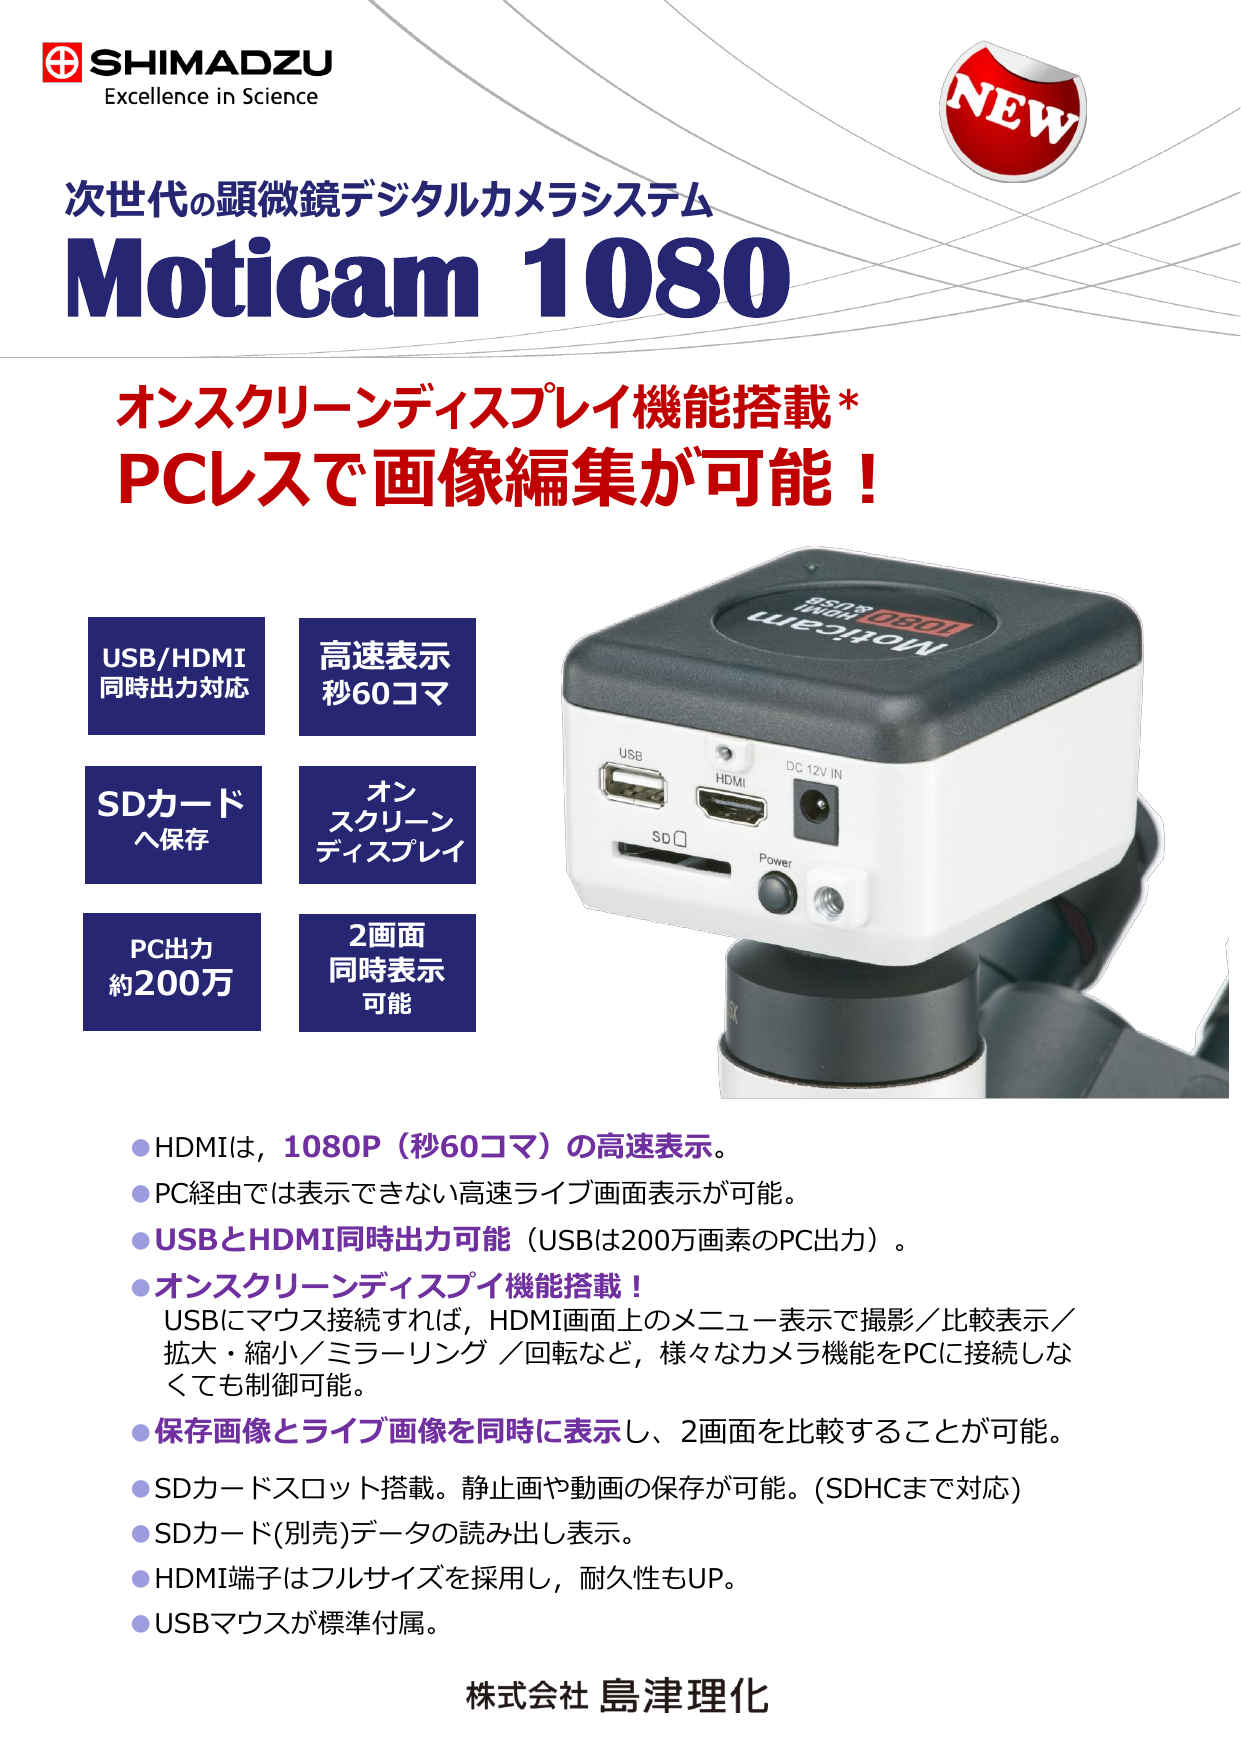 次世代の顕微鏡デジタルカメラシステム Moticam 1080（株式会社島津